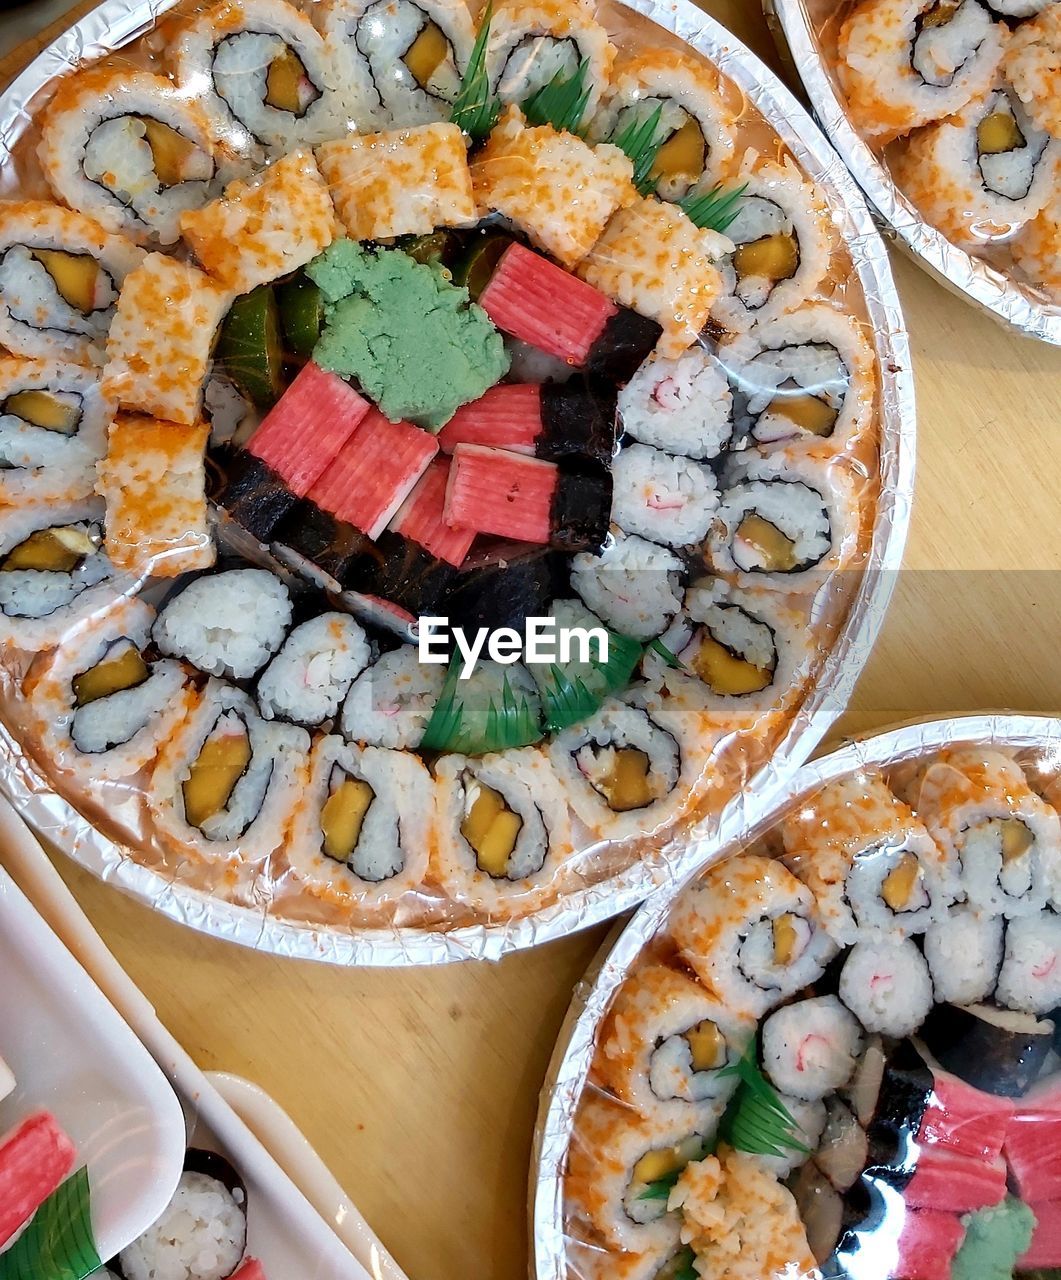 Sushi the foodie - 2019 eyeem awards